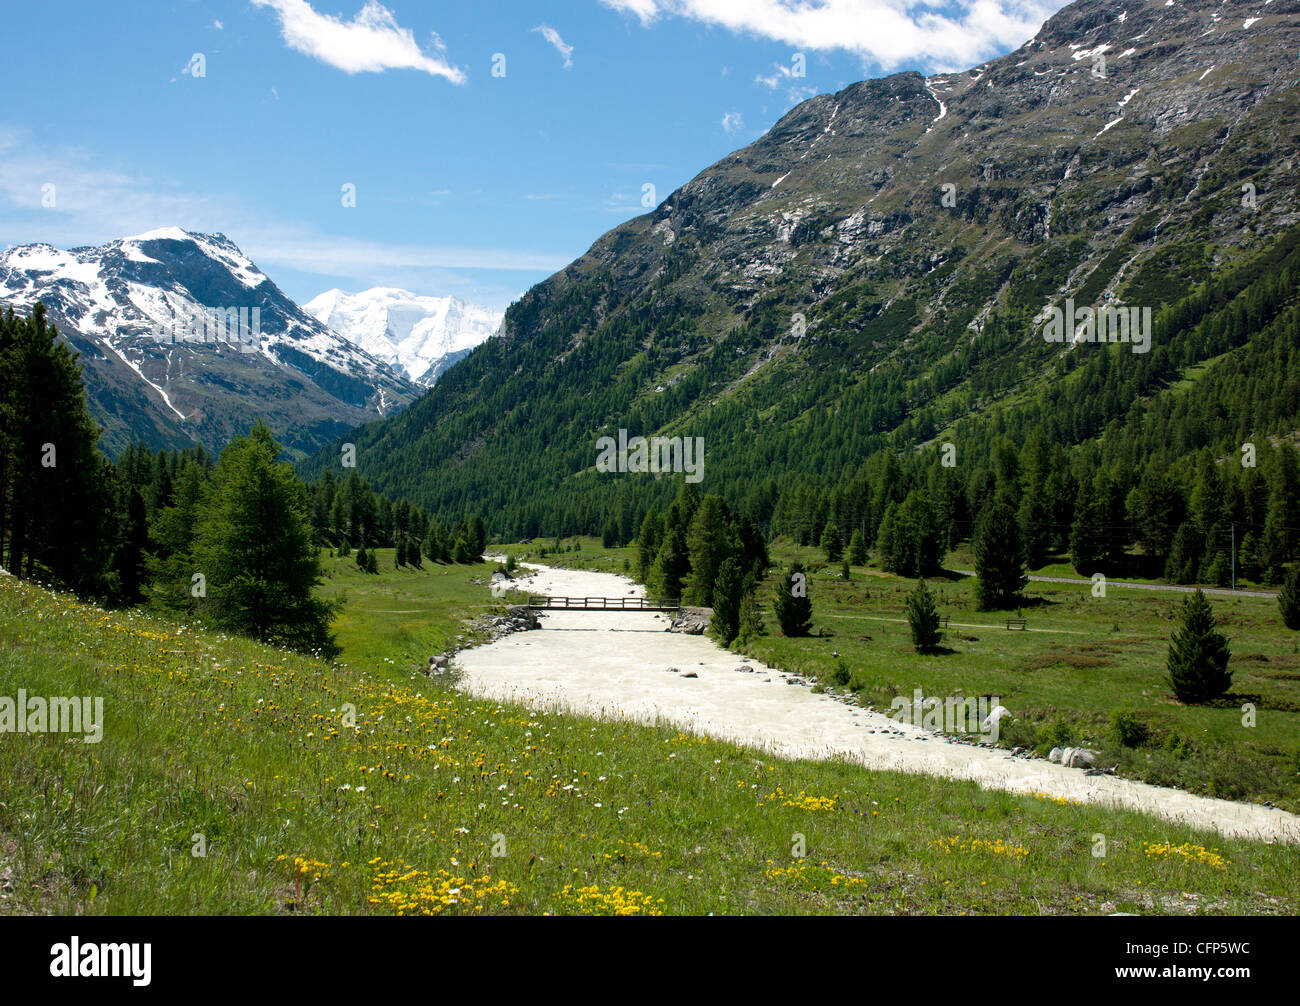 Rivière près de Saint-moritz, Canton des Grisons, Swiss Alps, Switzerland, Europe Banque D'Images